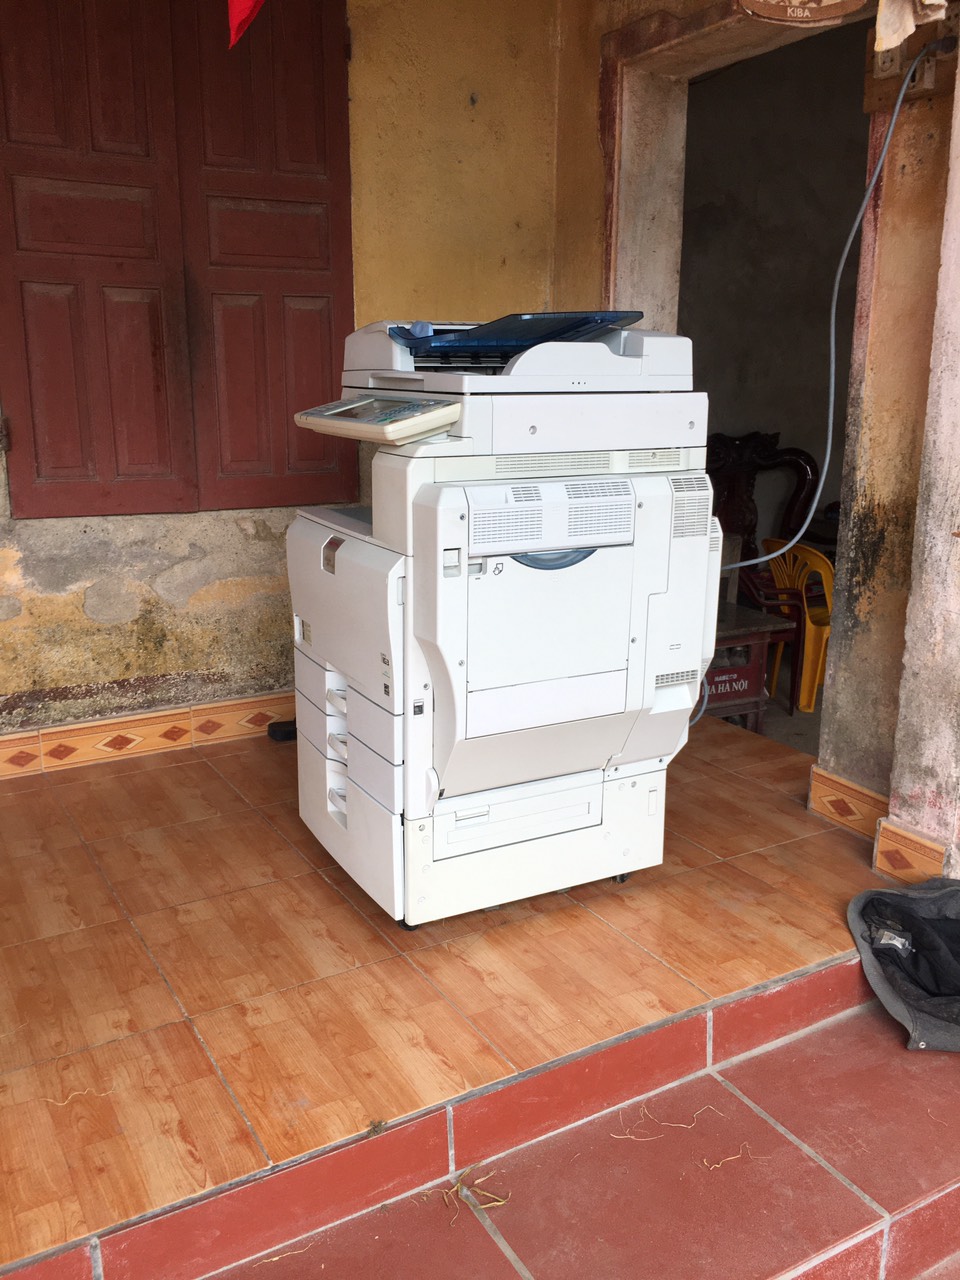 Giá cho thuê máy photocopy tại Hà Nội rẻ nhất